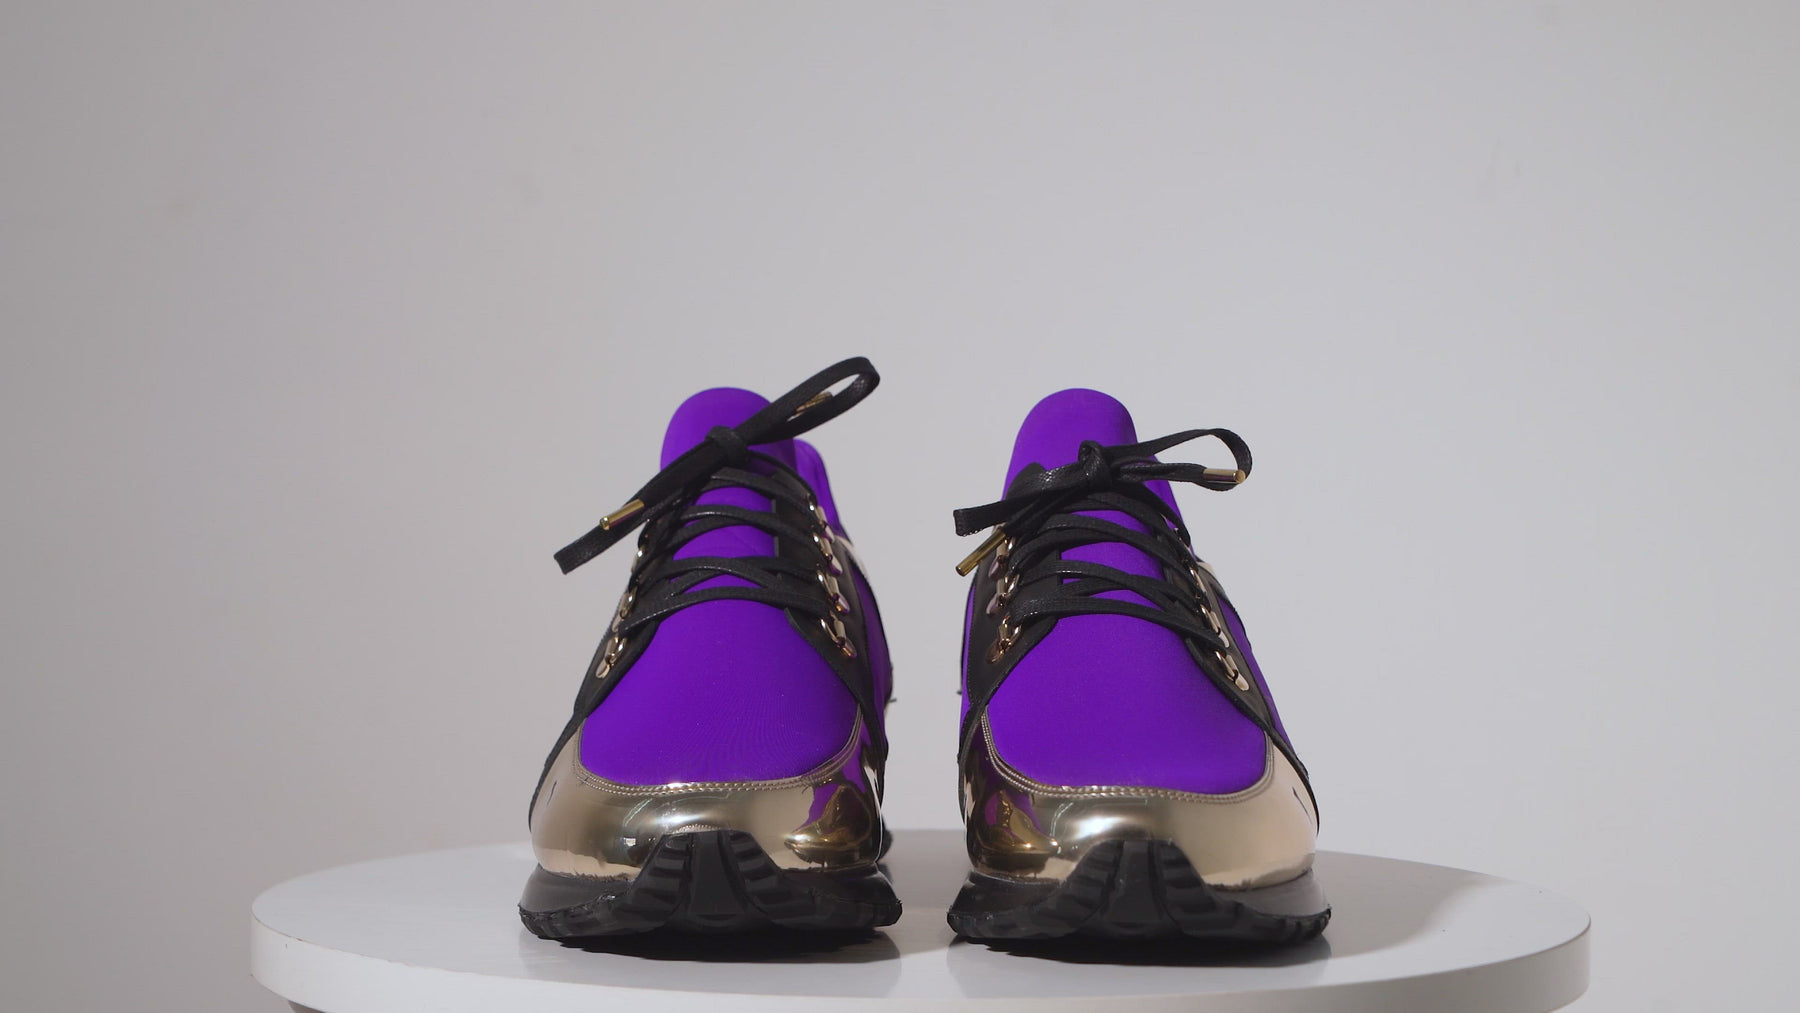 21 Best Purple Trainers ideas  purple trainers, sneakers, purple